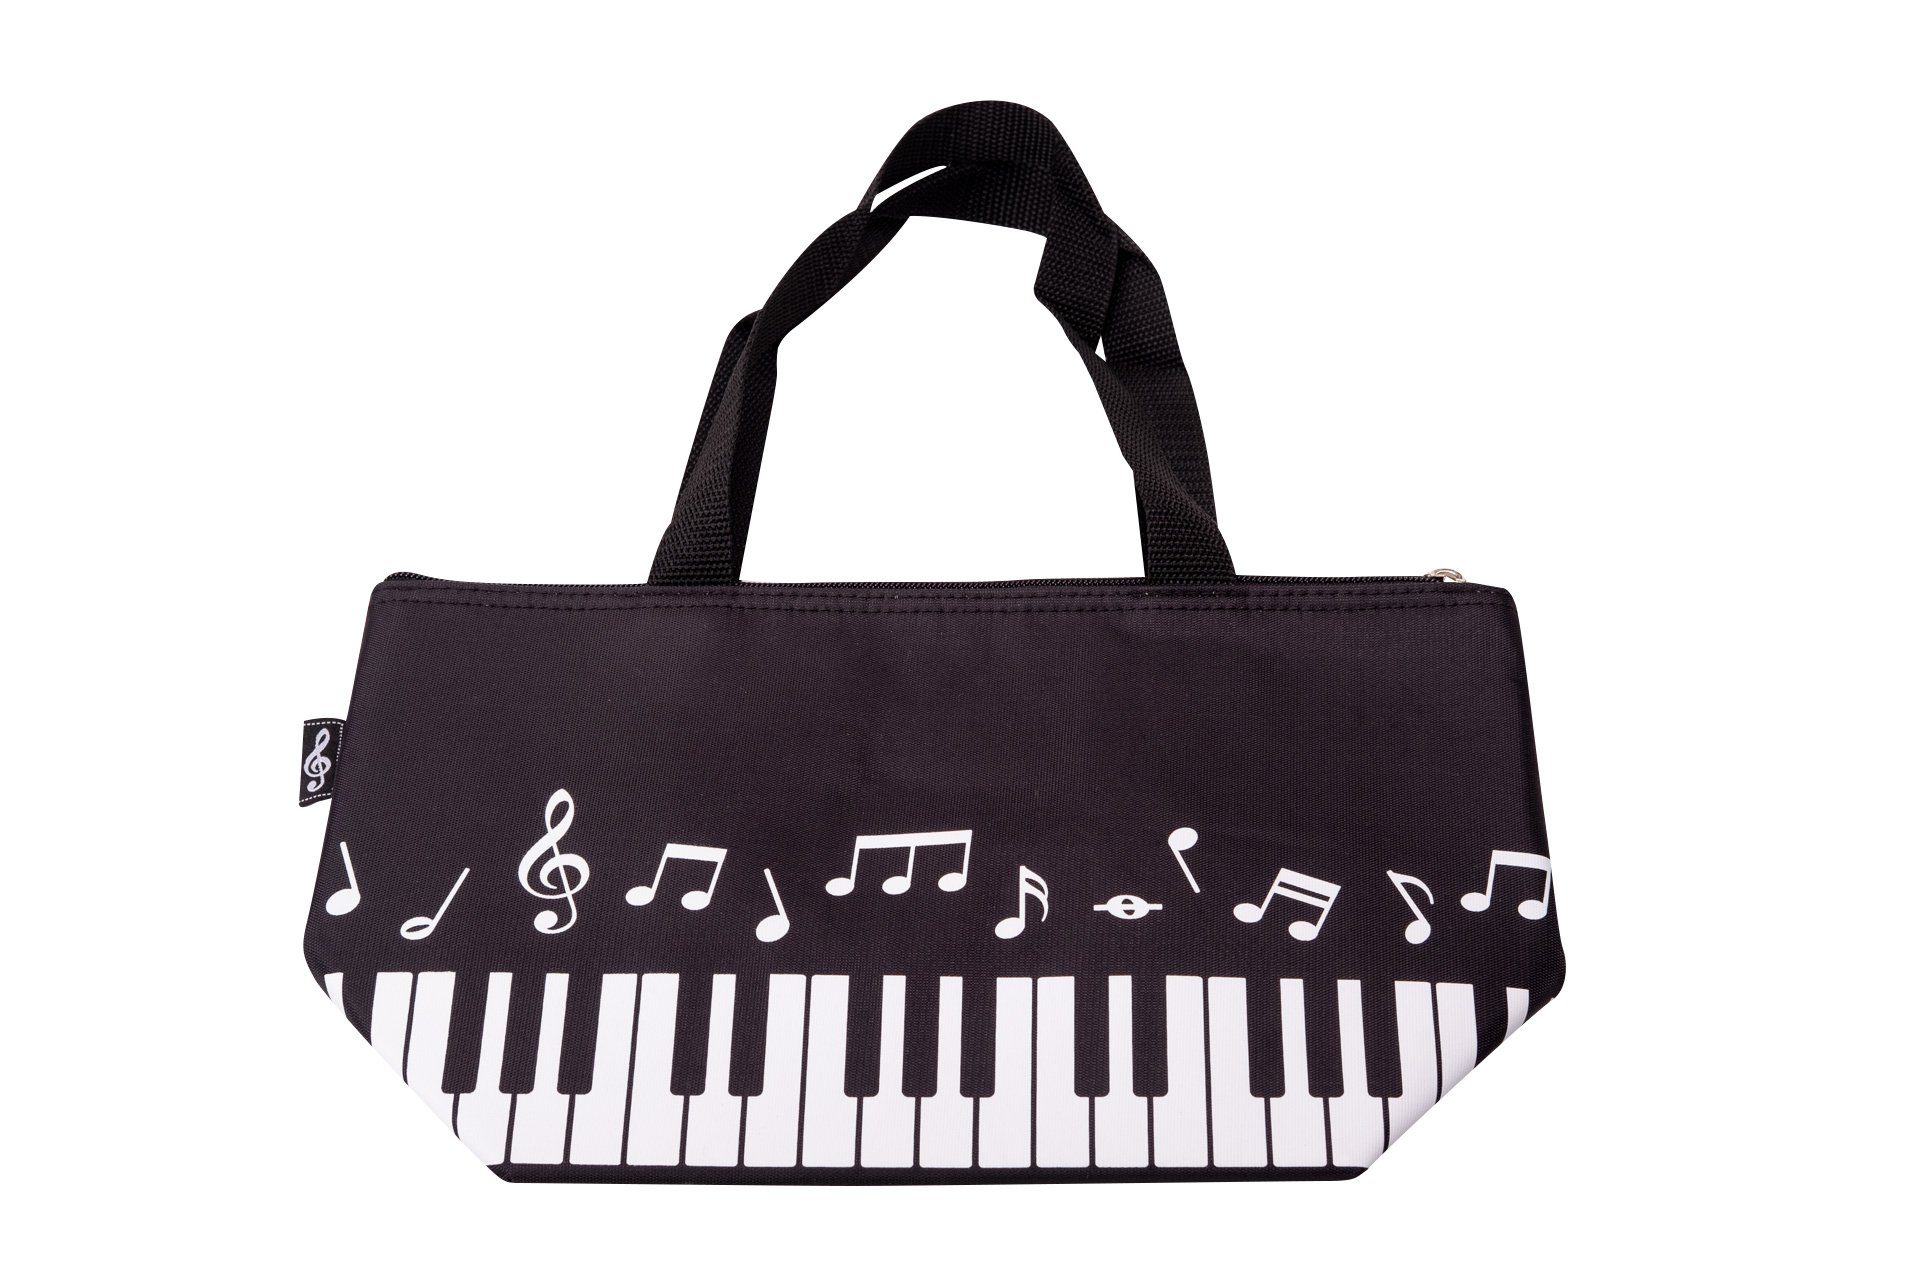 Musikboutique Freizeittasche, Kühltasche mit Keyboard-Motiv und Noten